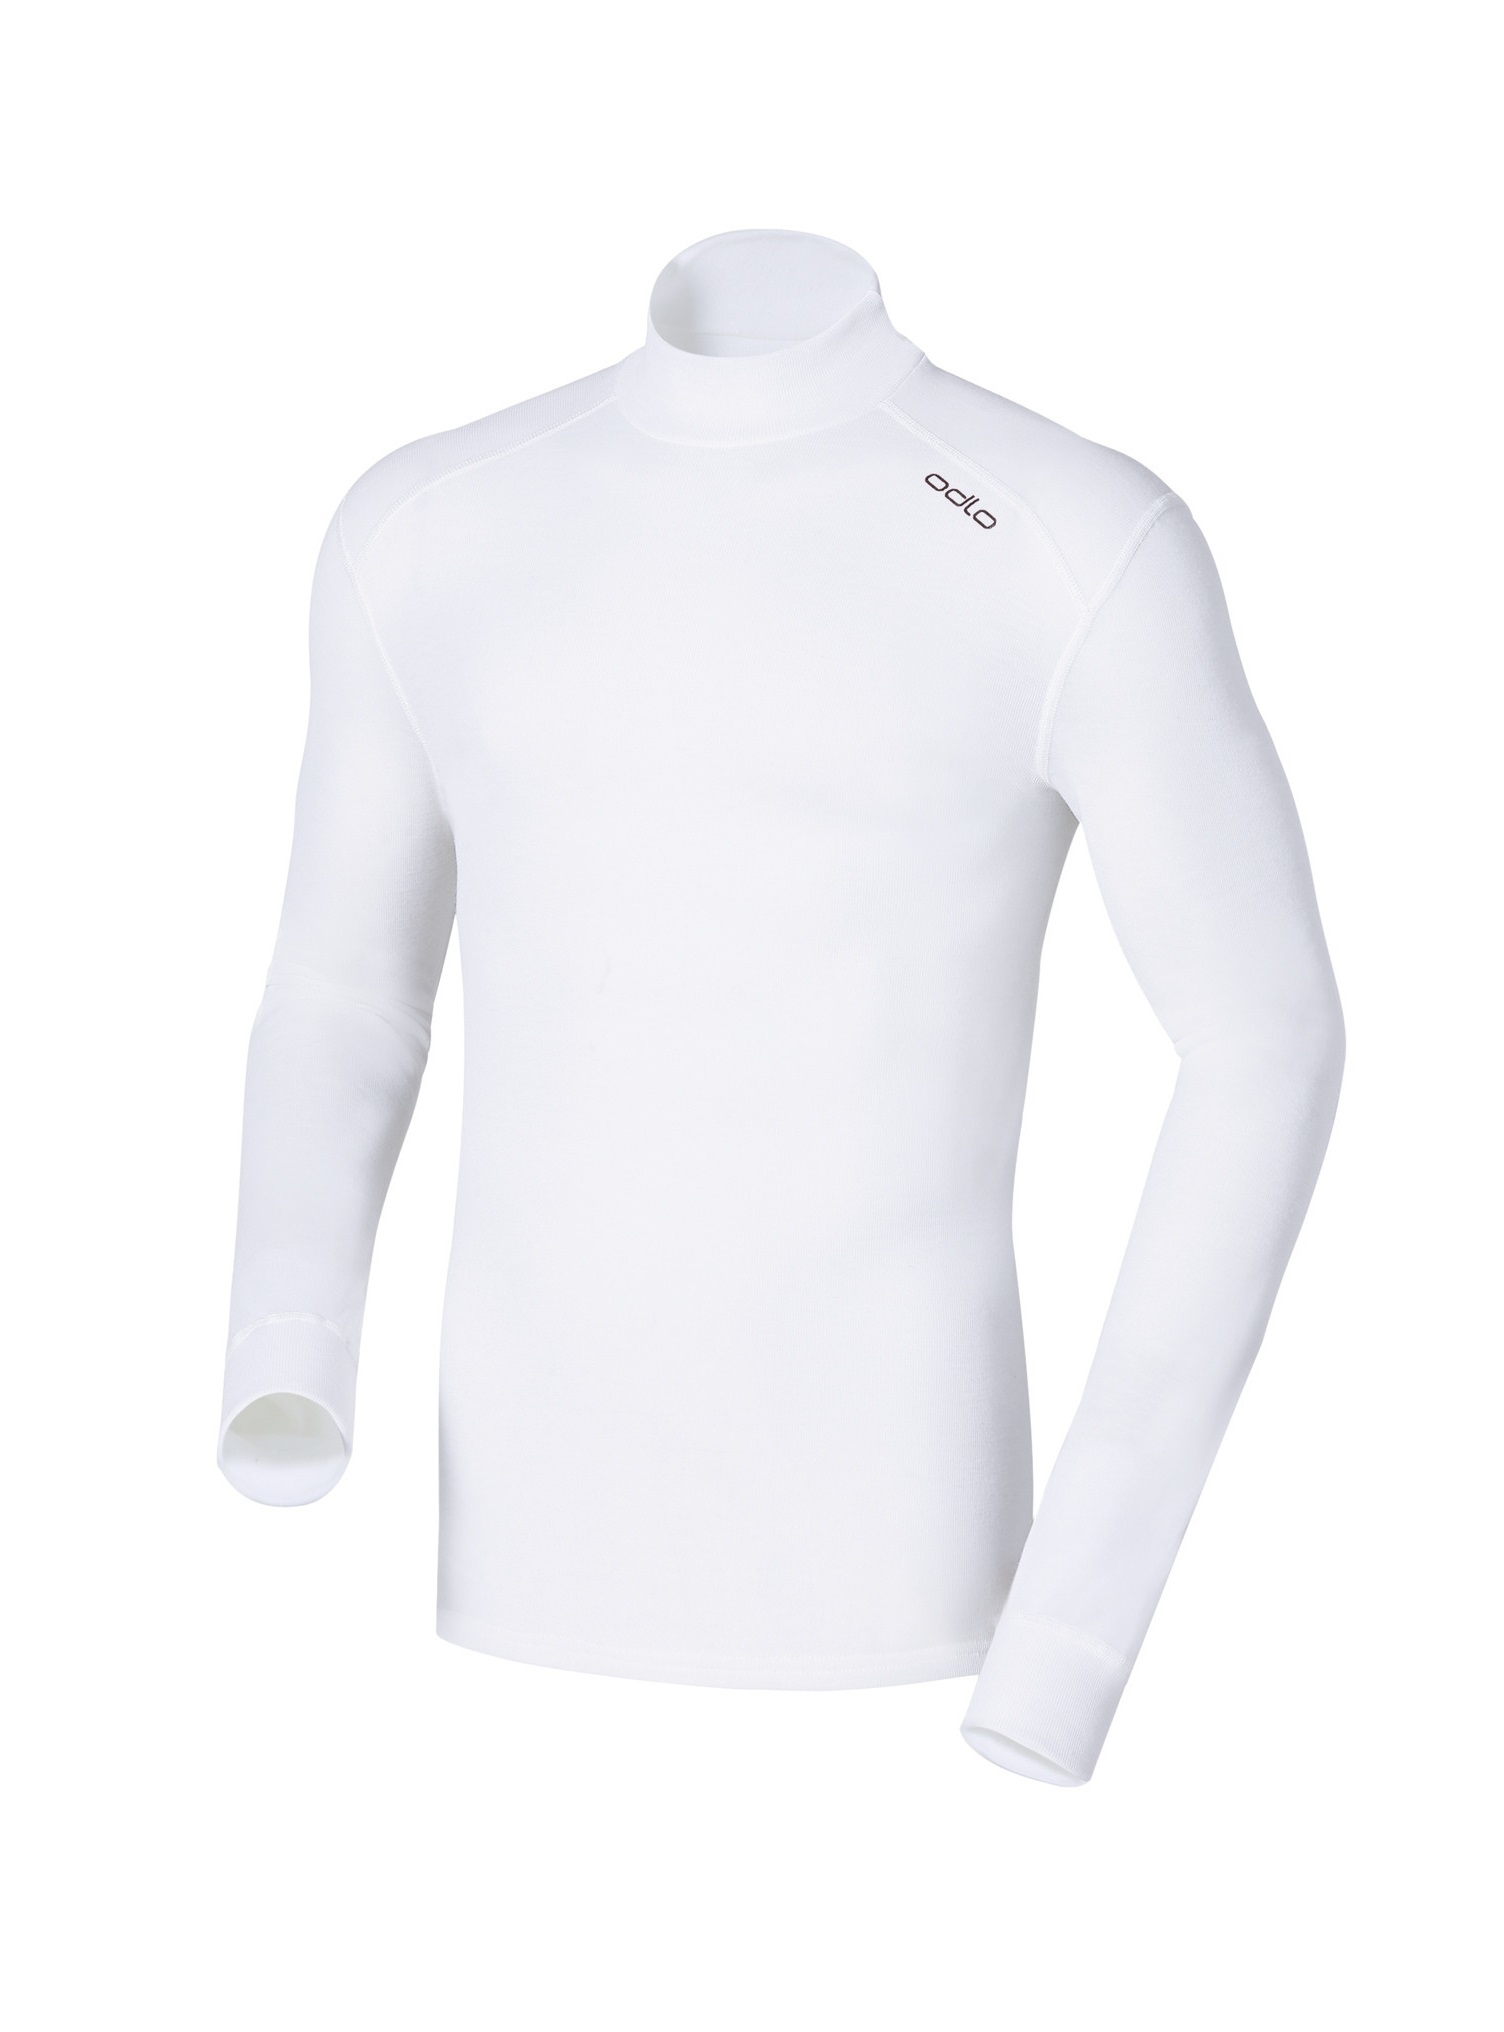 Мужское термобелье рубашка с воротником-стойкой Odlo L/S Turtle Neck Warm152012-10000 купить в Интернет-магазин Five-sport.ru